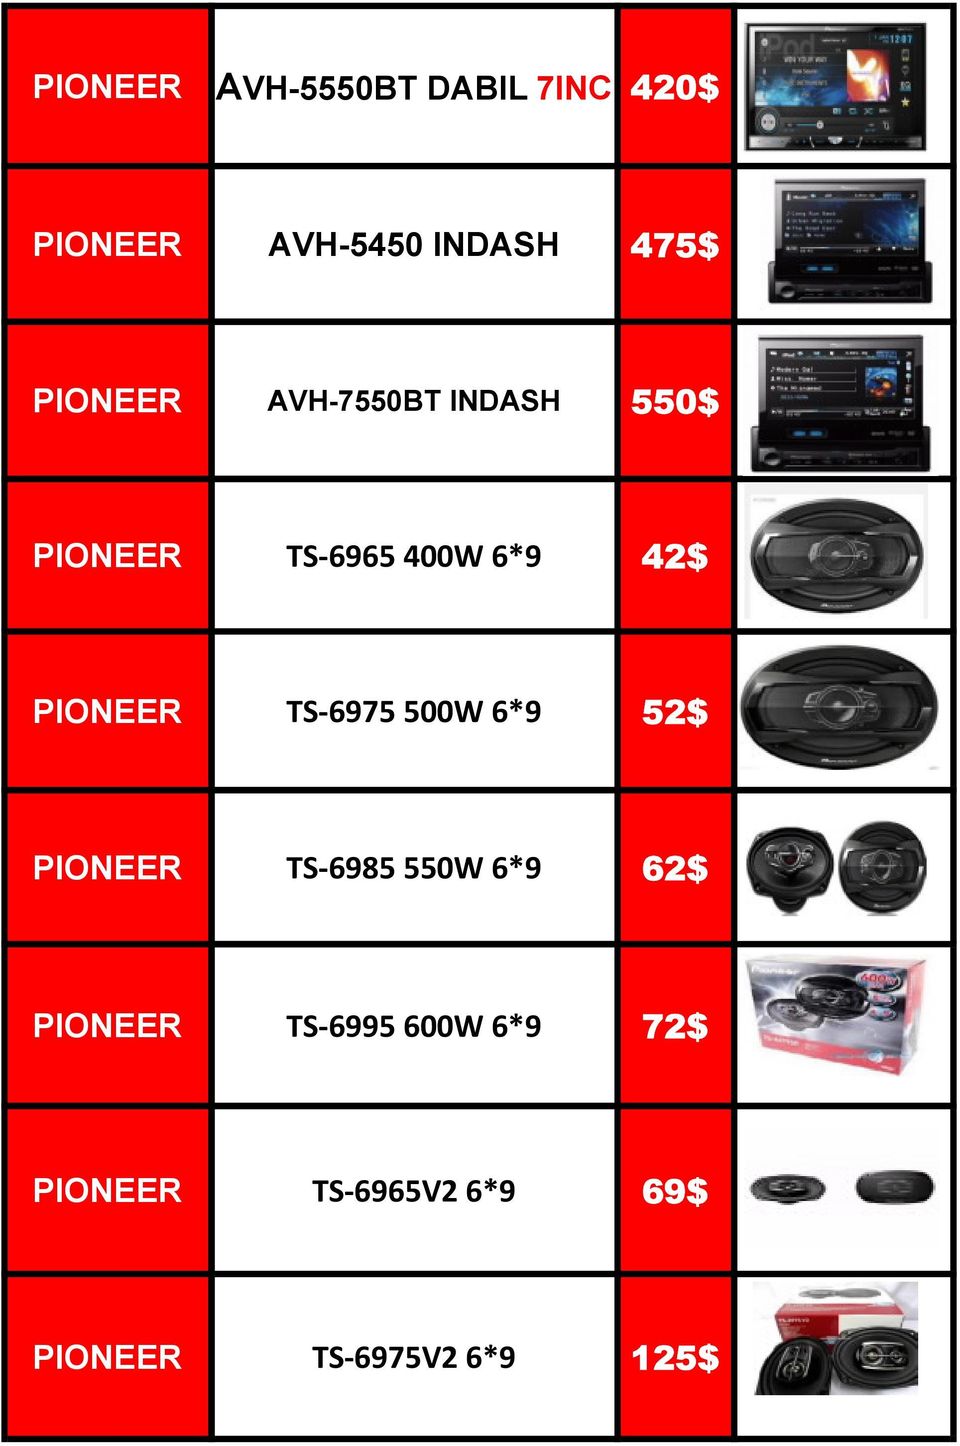 PIONEER TS-6975 500W 6*9 52$ PIONEER TS-6985 550W 6*9 62$ PIONEER